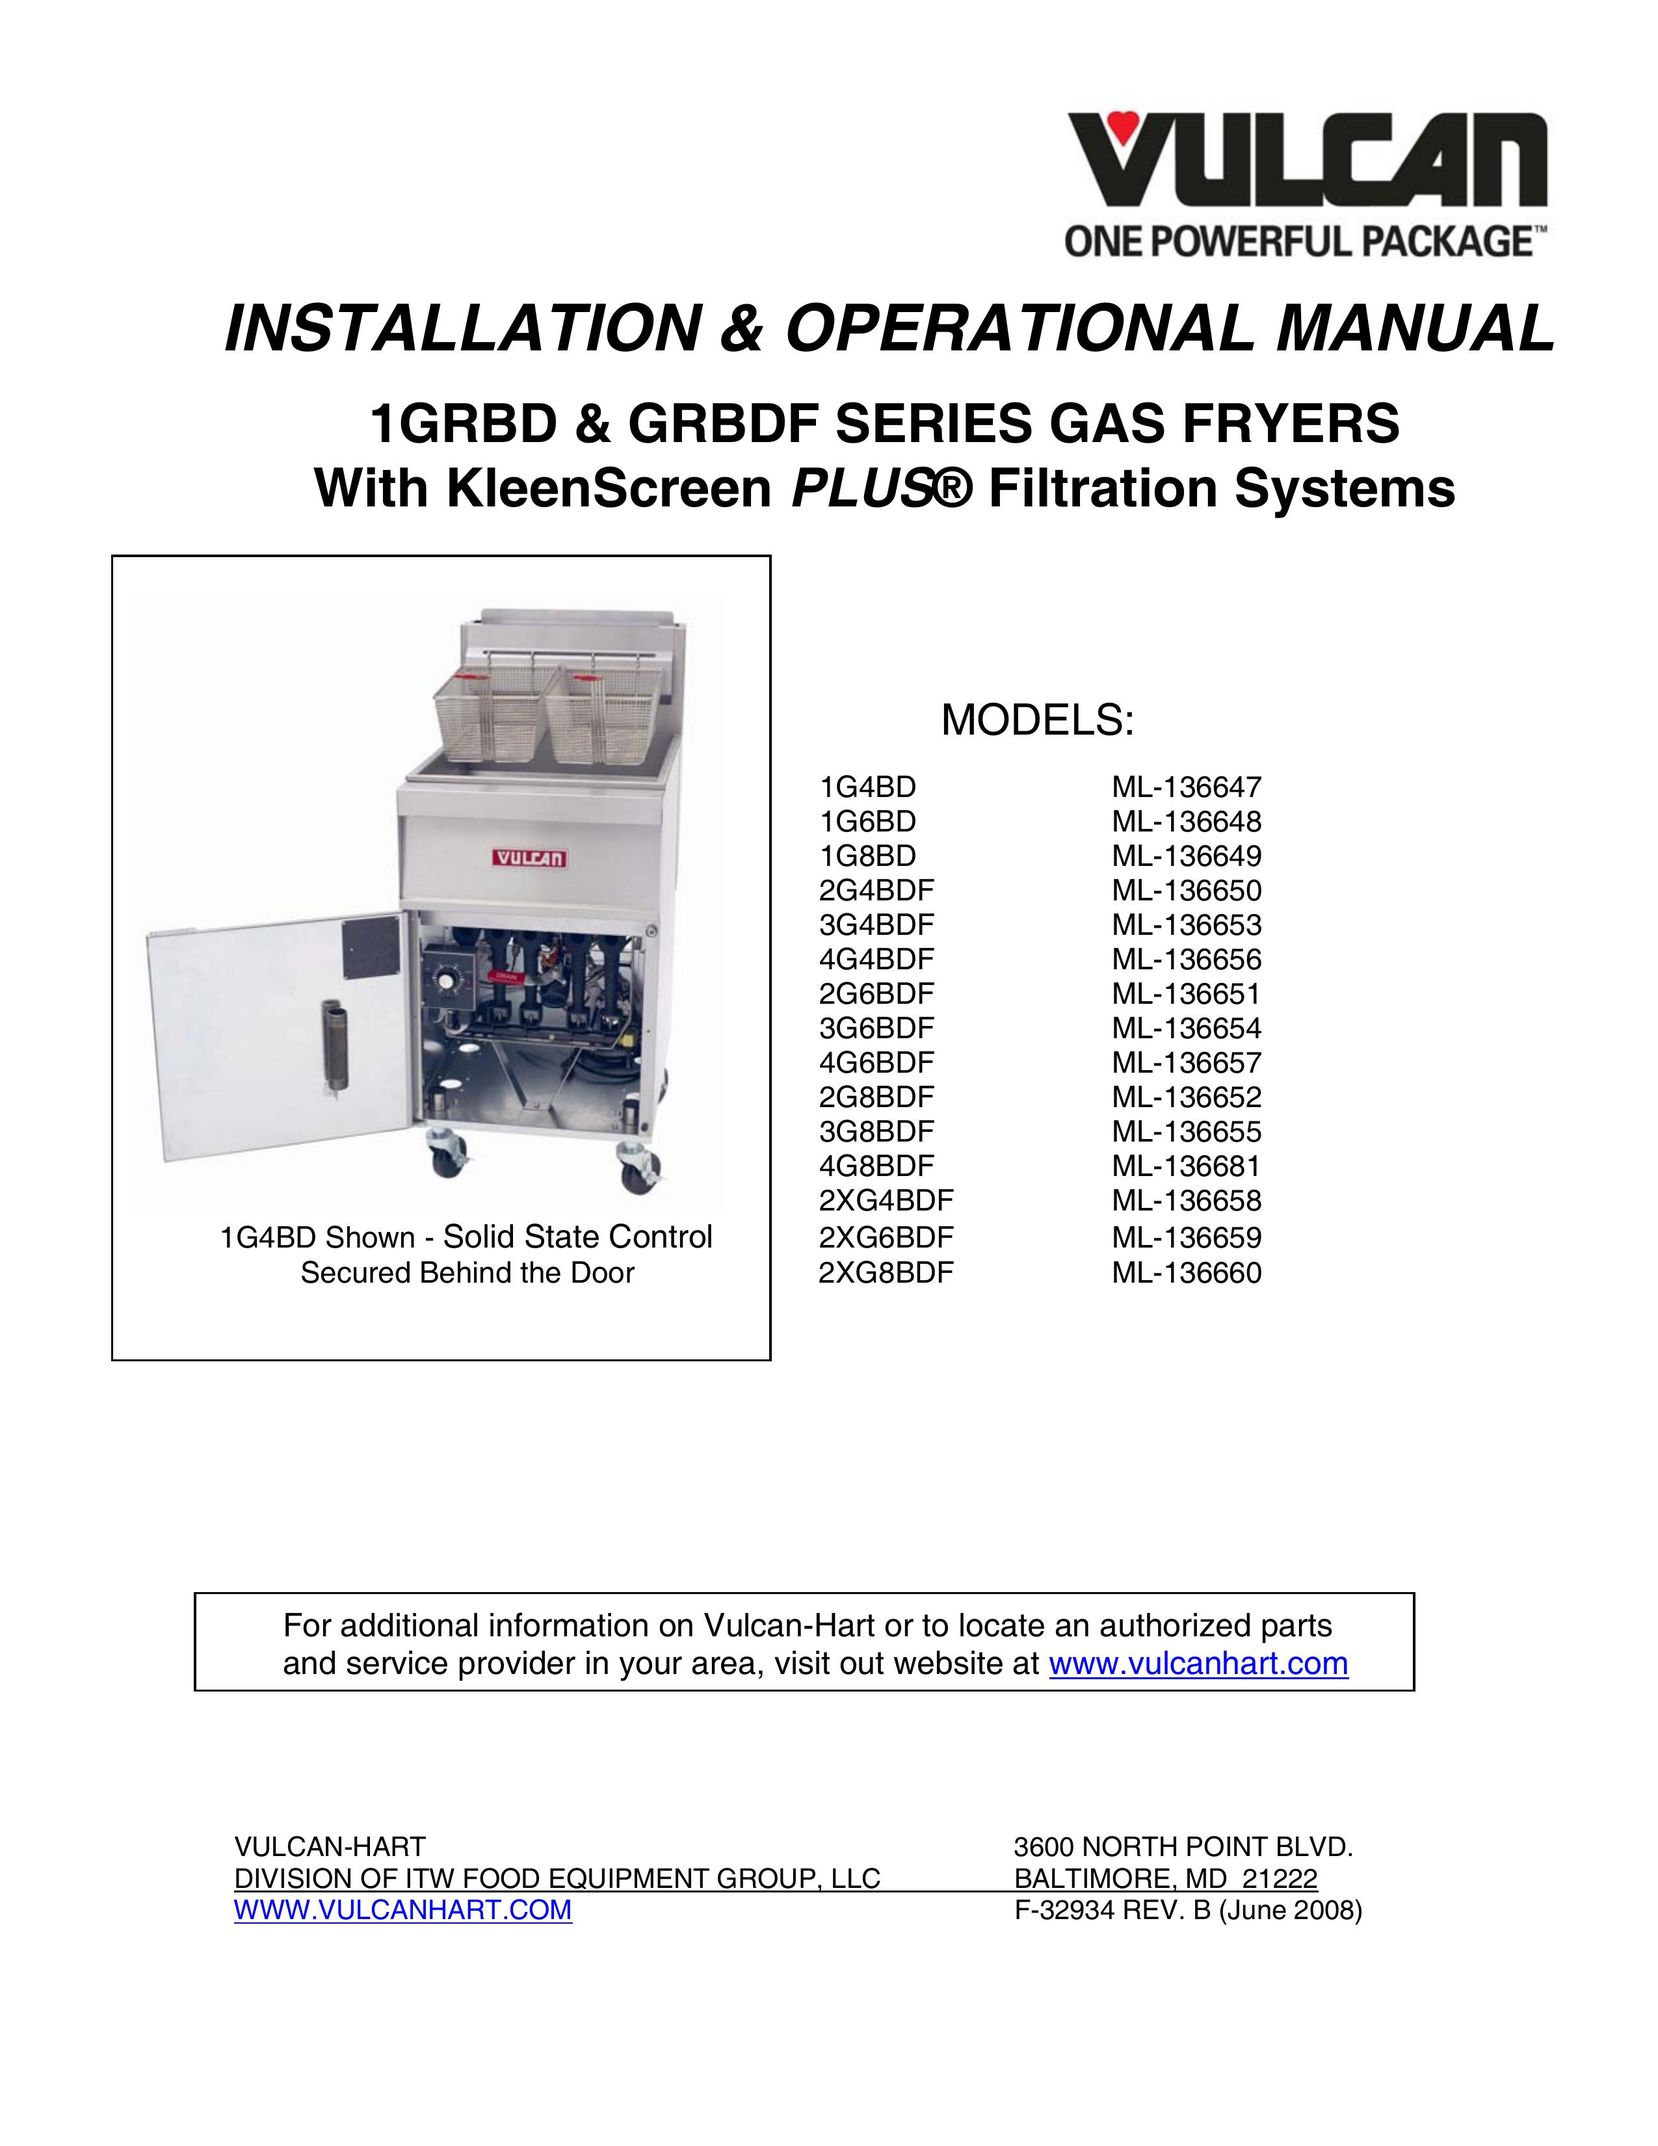 Vulcan-Hart 1G6BD ML-136648 Fryer User Manual